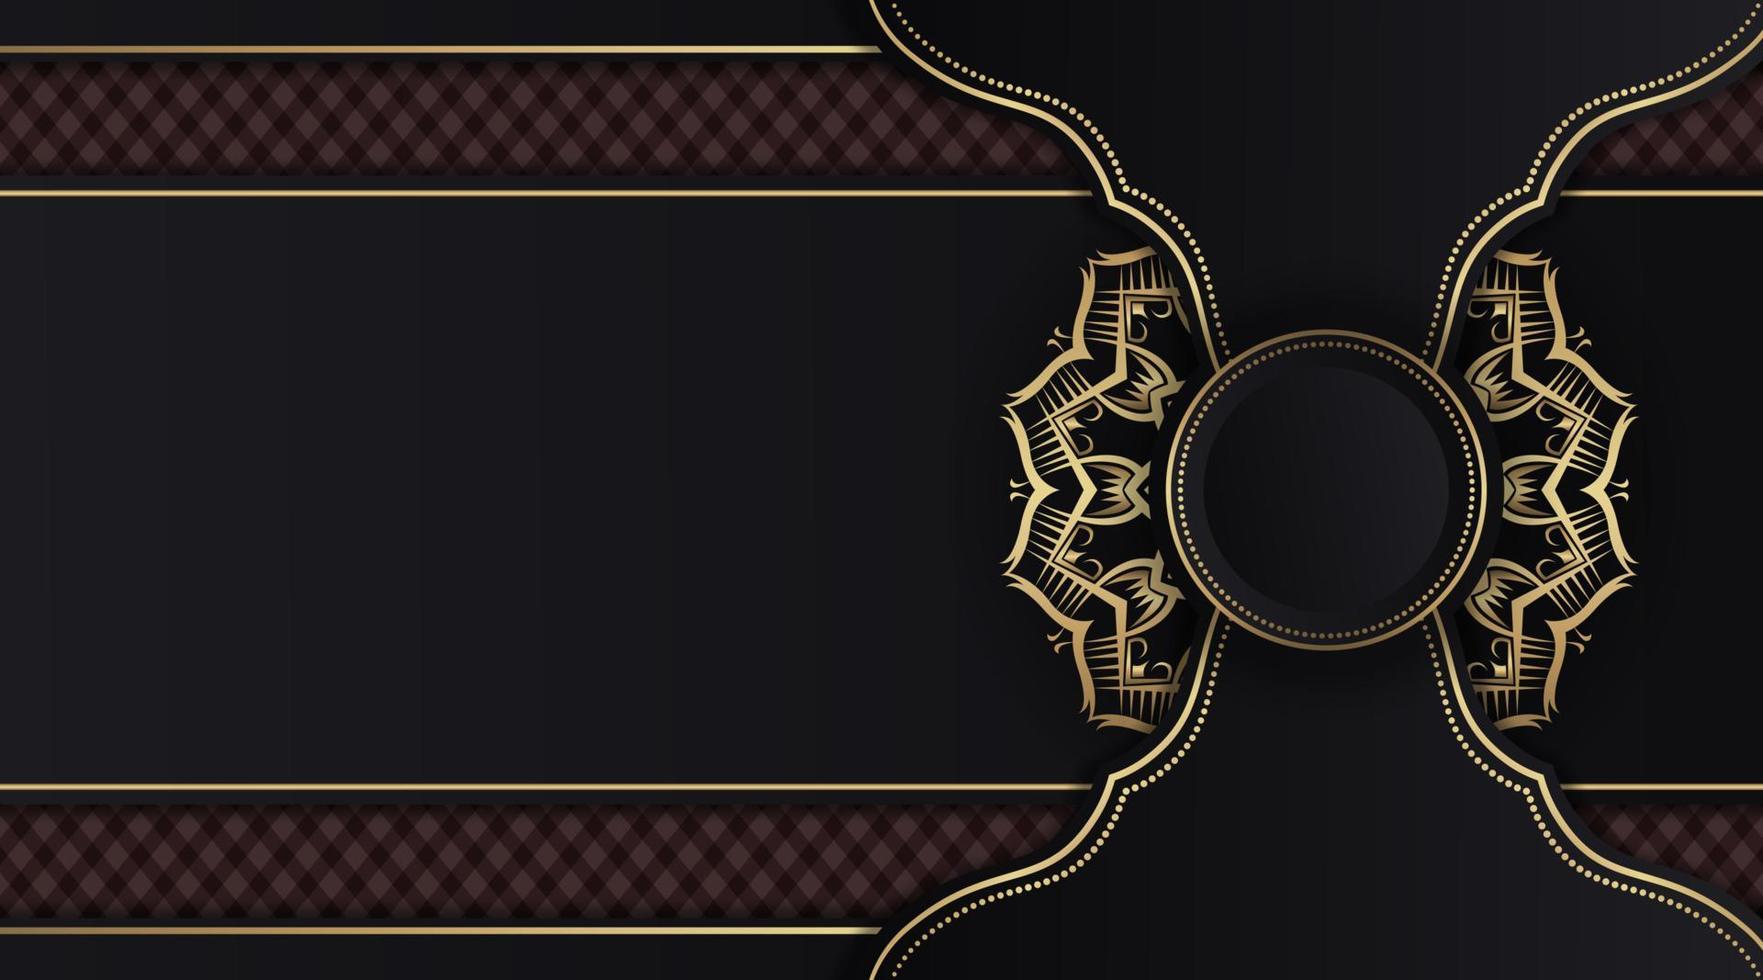 mandala ornamental de luxo, escuro e dourado, vetor de design